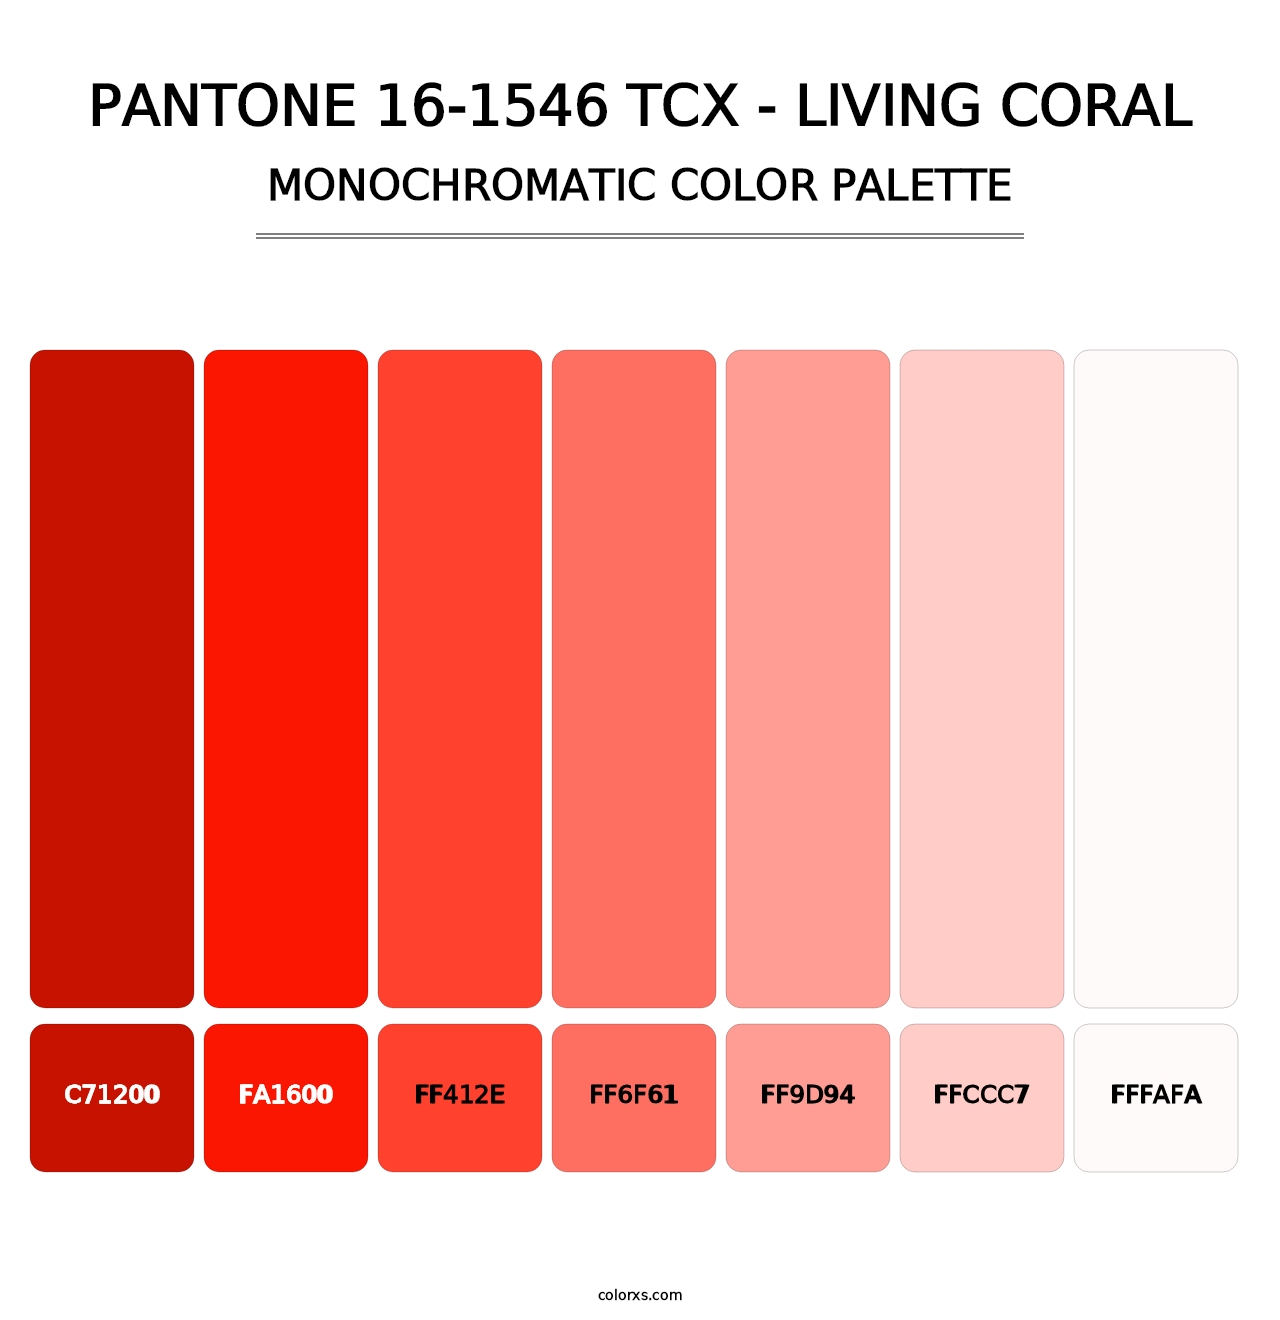 PANTONE 16-1546 TCX - Living Coral - Monochromatic Color Palette